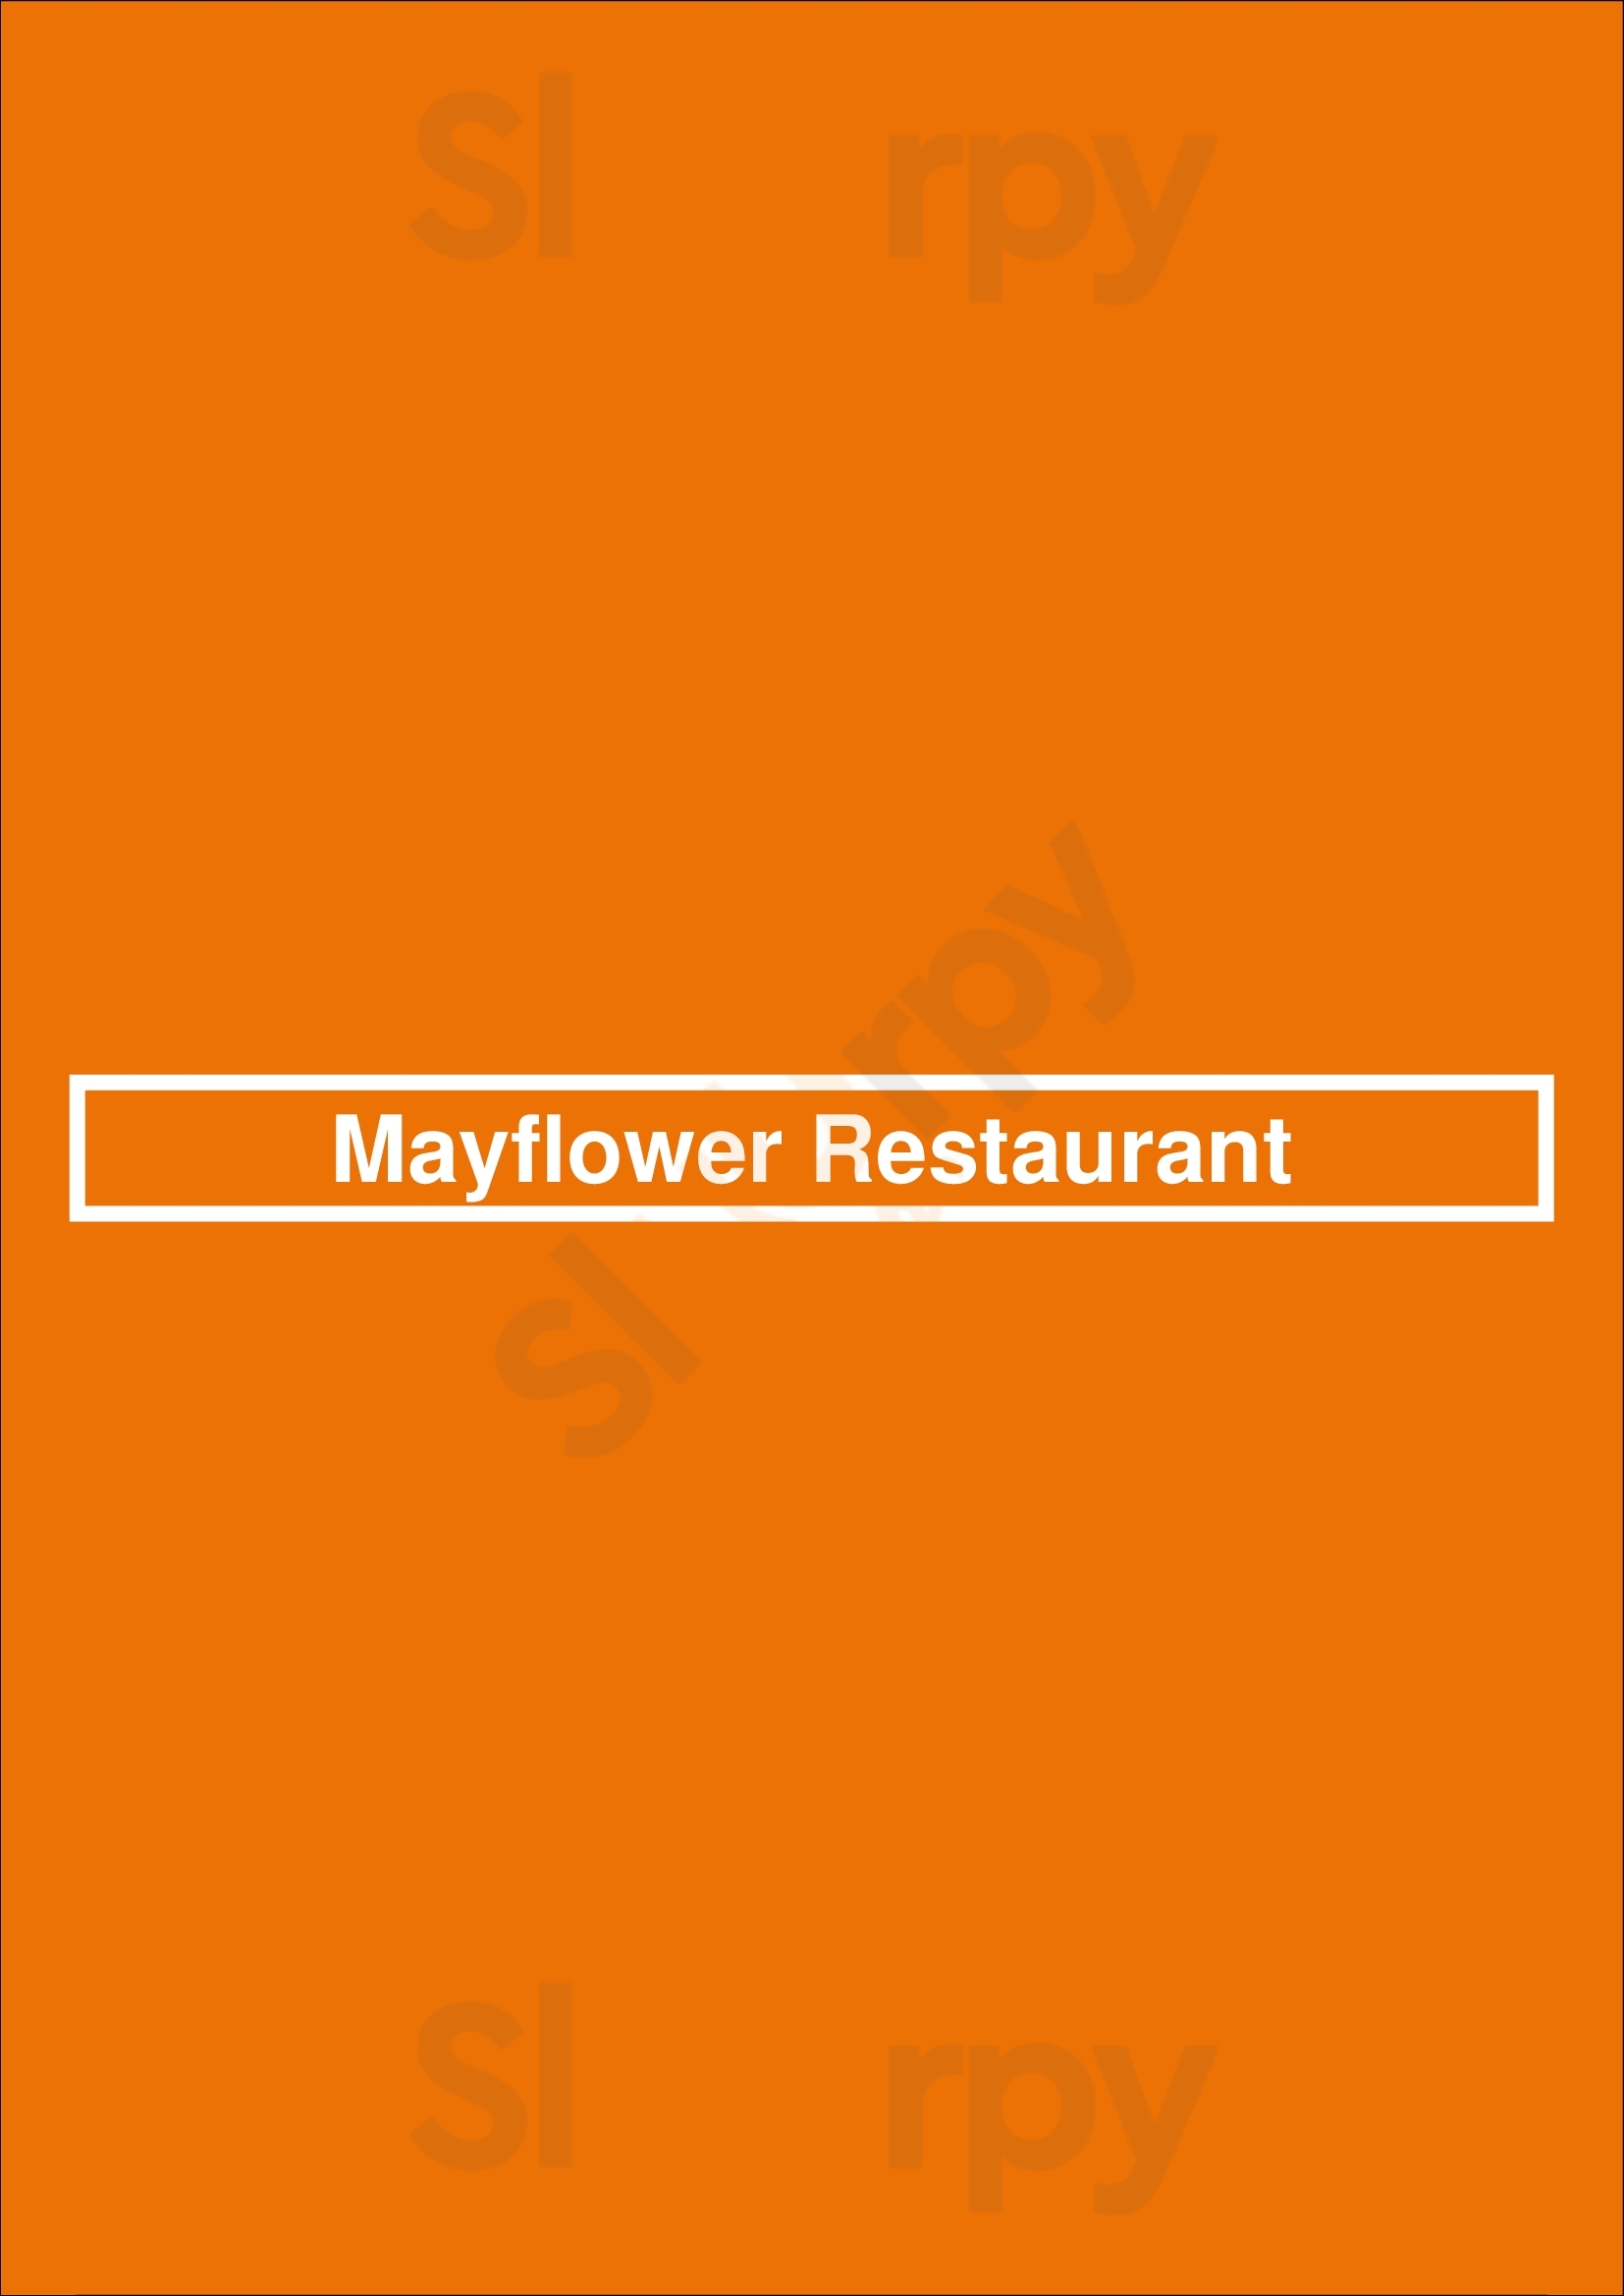 Mayflower Restaurant Adelaide Menu - 1